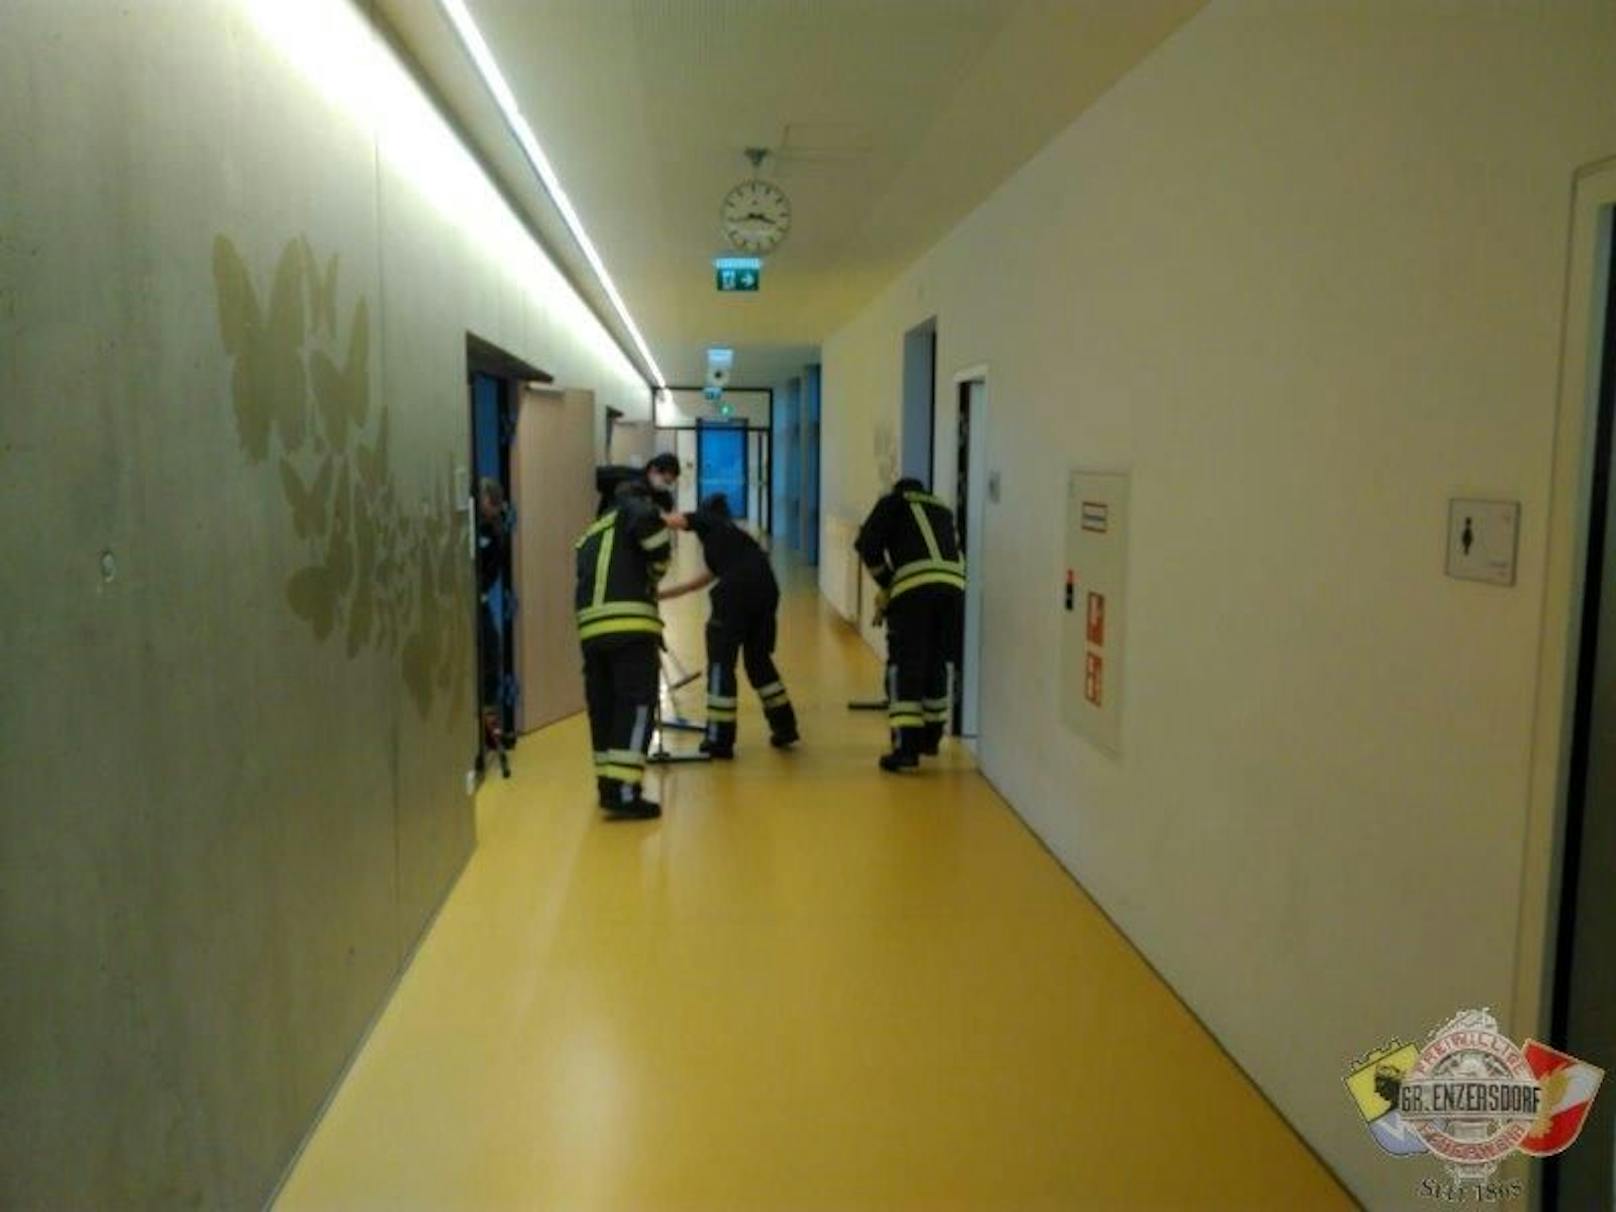 Gymnasium in Groß-Enzersdorf geflutet, die Feuerwehr half